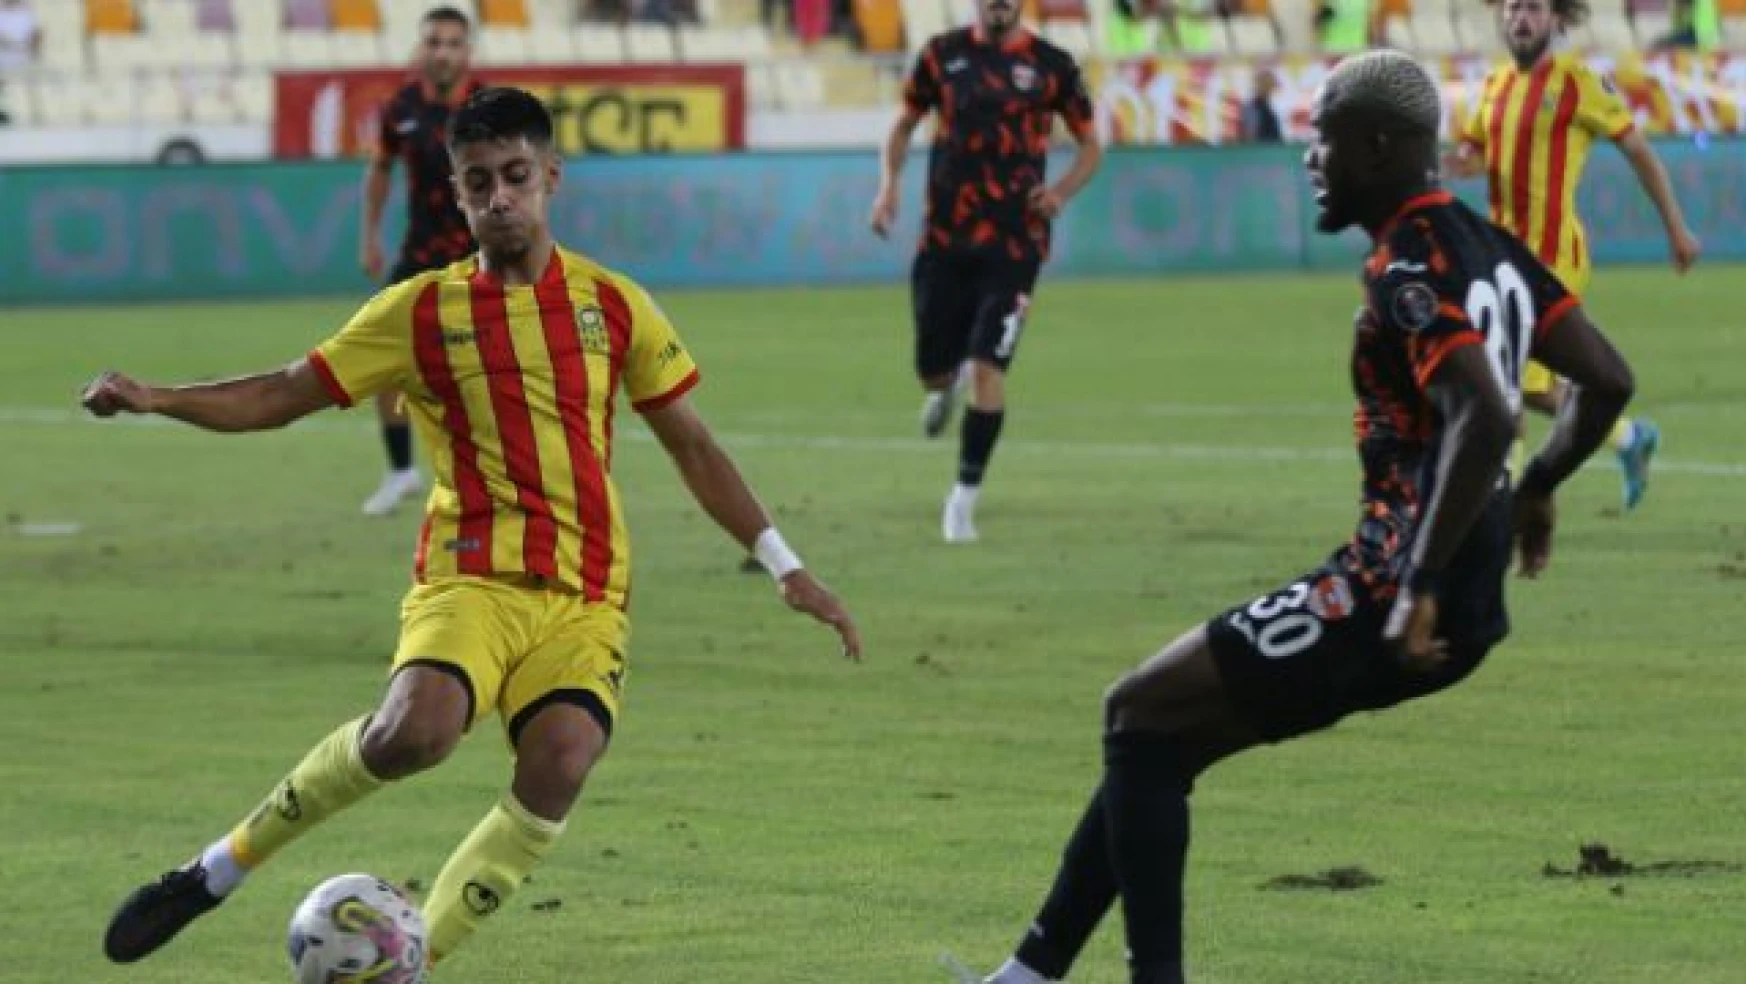 Yeni Malatyaspor, Adanaspor maç sonucu 1-1